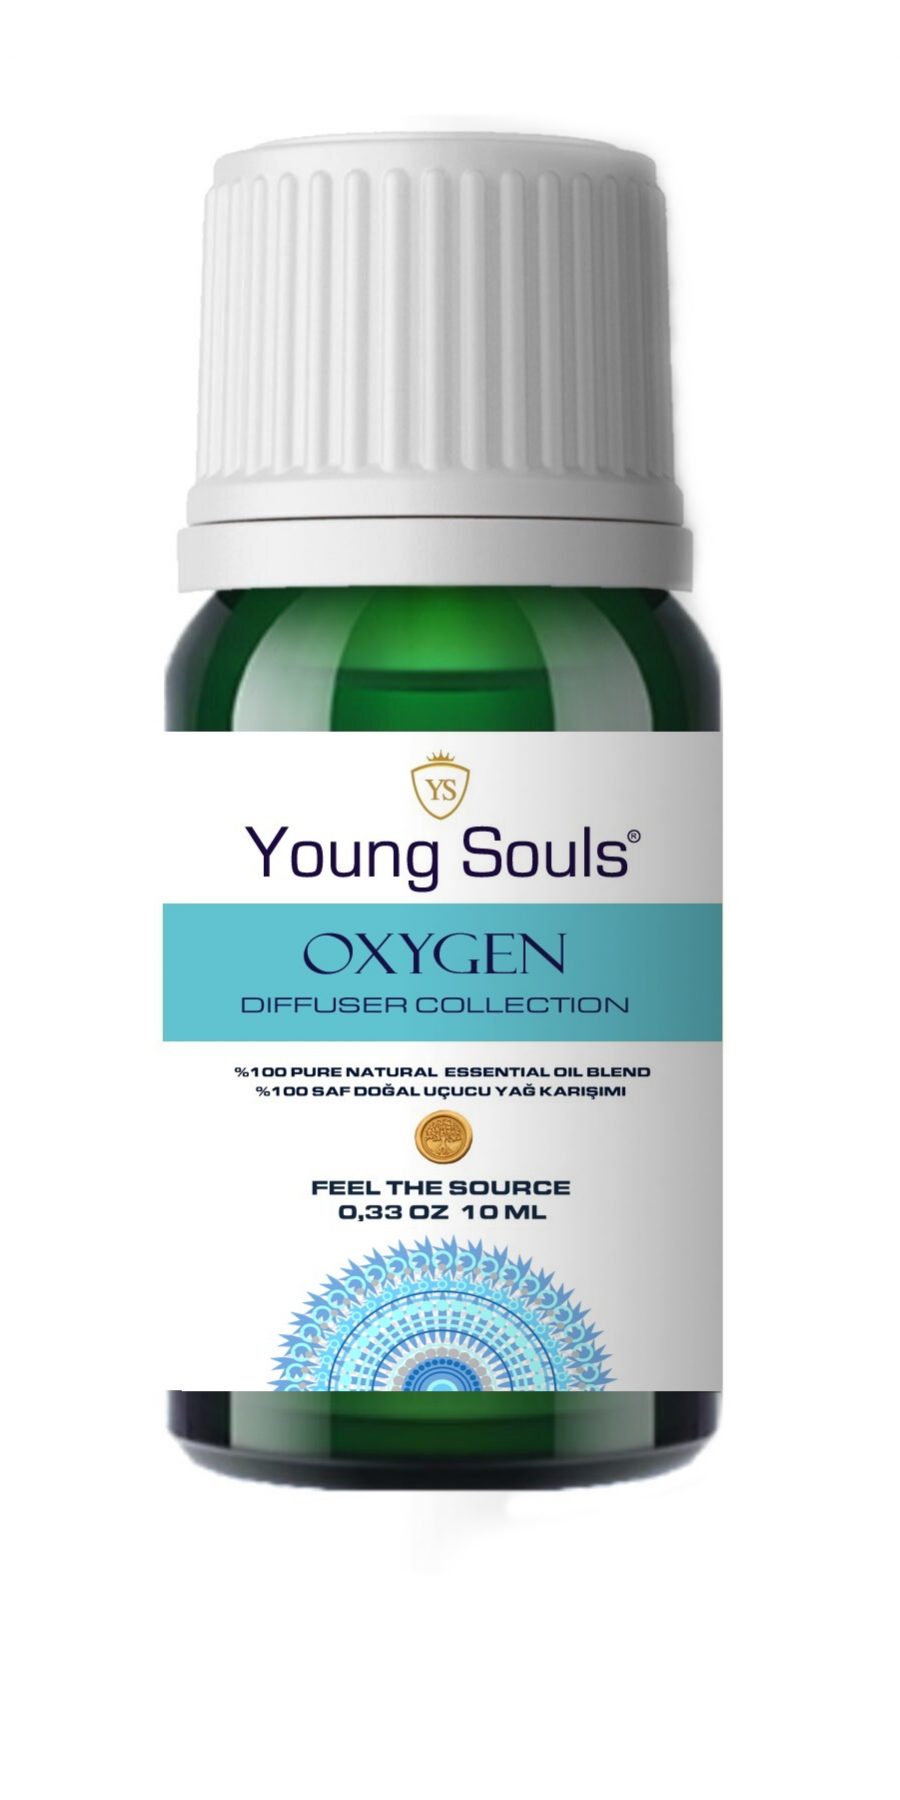 Young Souls Aromaterapi Oxygen ( Oksijen ) Difüzör Uçucu Yağ Karışımı %100 Pure 10 ml